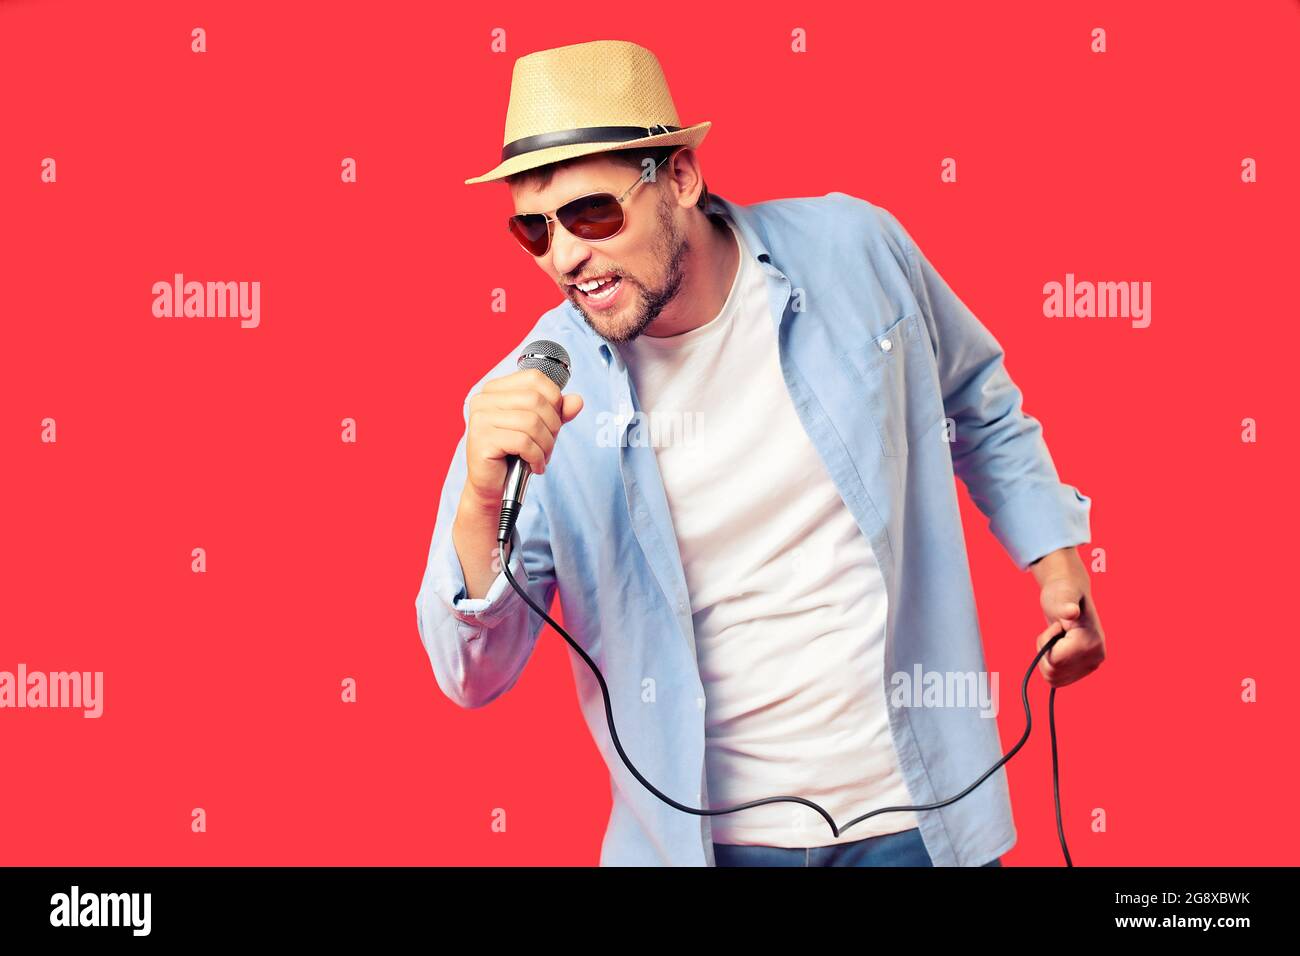 Ein weißer Mann mit Hut und Sonnenbrille singt ein Lied in ein Mikrofon. Gesangsleistung des Liedes. Hintergrund für die Werbung für einen Karaoke-Club oder eine Bar. Eine emotionale Sängerin. Studio-Porträt auf rotem Hintergrund. Stockfoto